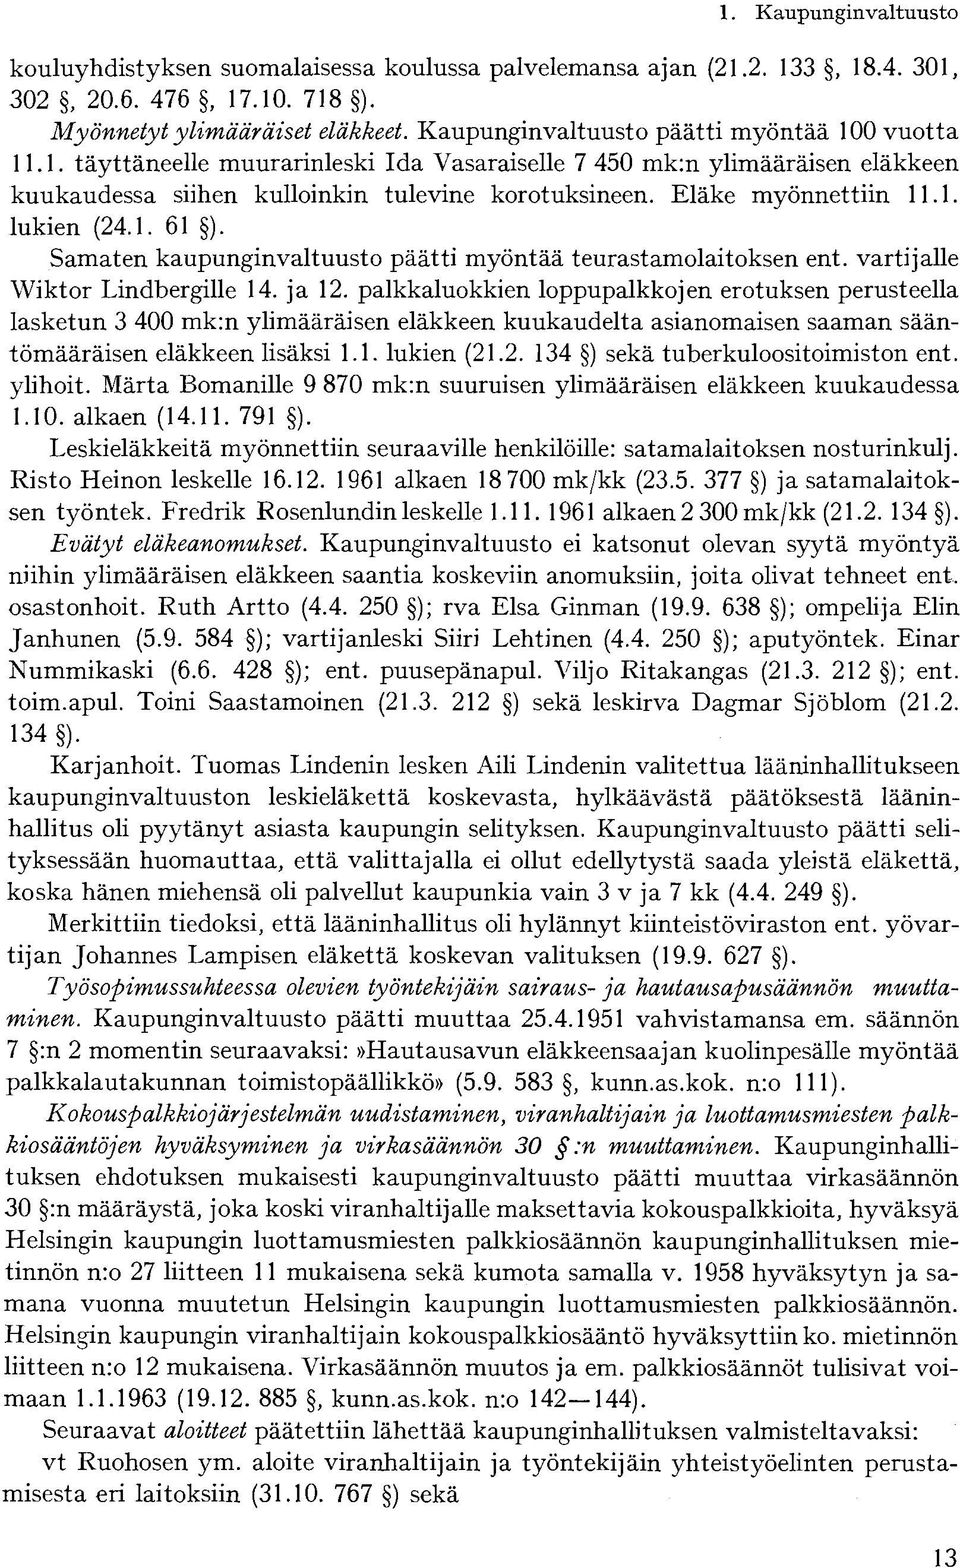 Eläke myönnettiin 11.1. lukien (24.1. 61 ). Samaten kaupunginvaltuusto päätti myöntää teurastamolaitoksen ent. vartijalle Wiktor Lindbergille 14. ja 12.